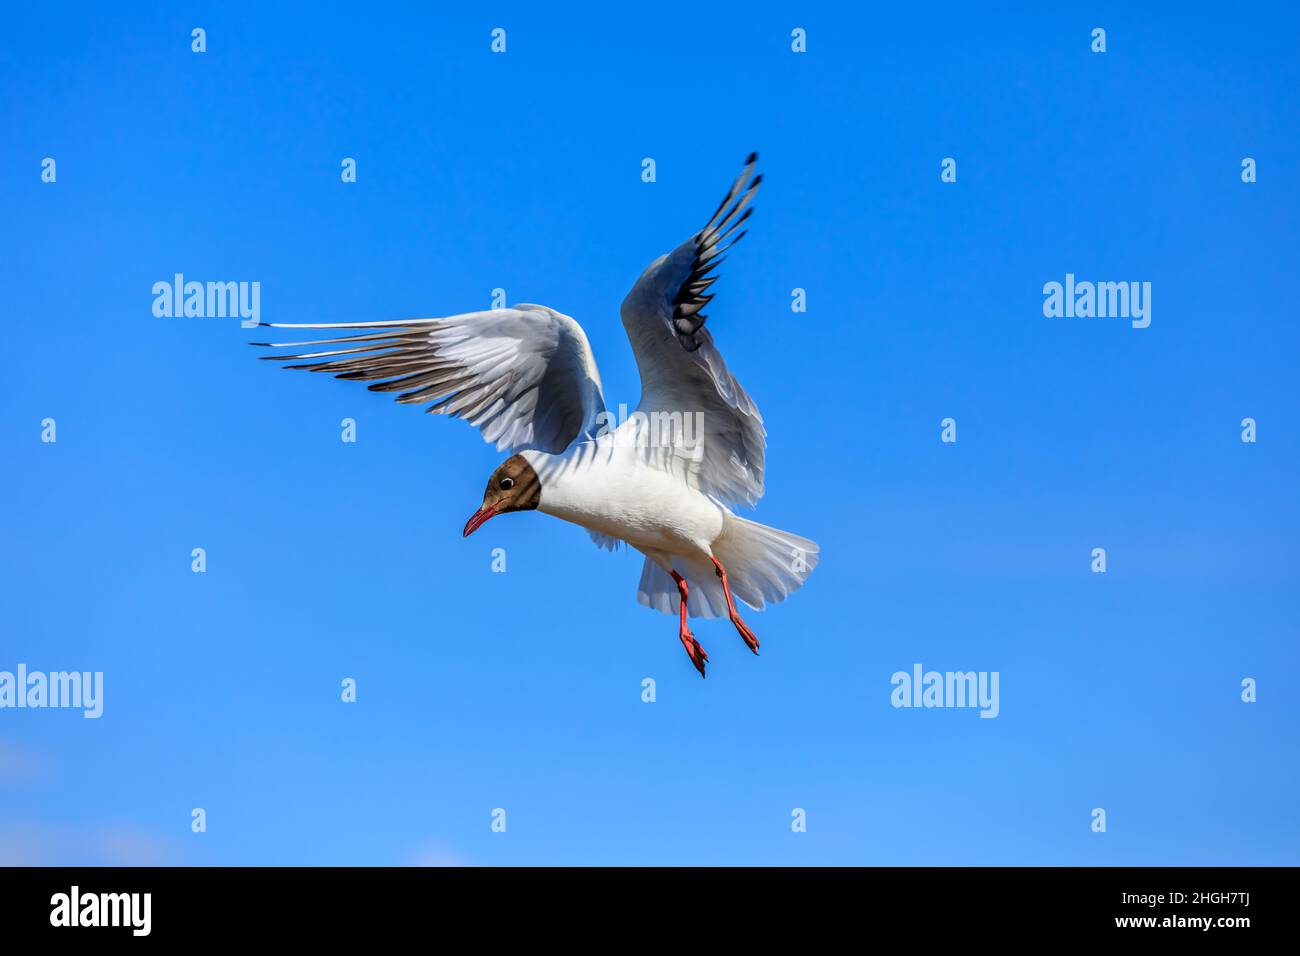 Un gabbiano a testa nera che vola nel cielo blu. La posizione graziosa dell'uccello a mezz'aria. Foto Stock